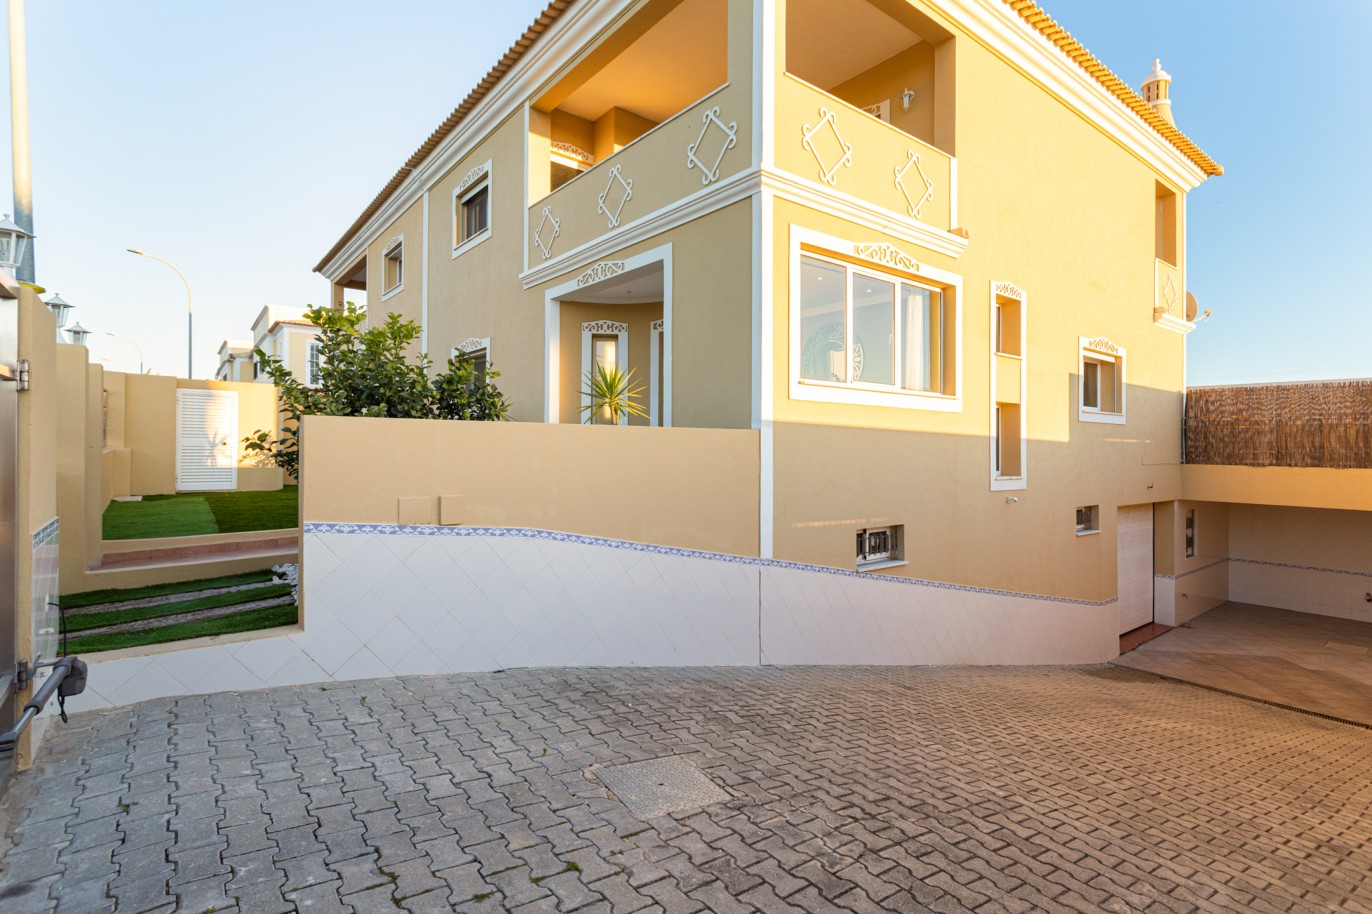 Villa de 4 dormitorios en zona de prestigio, en venta en Almancil, Algarve_217648